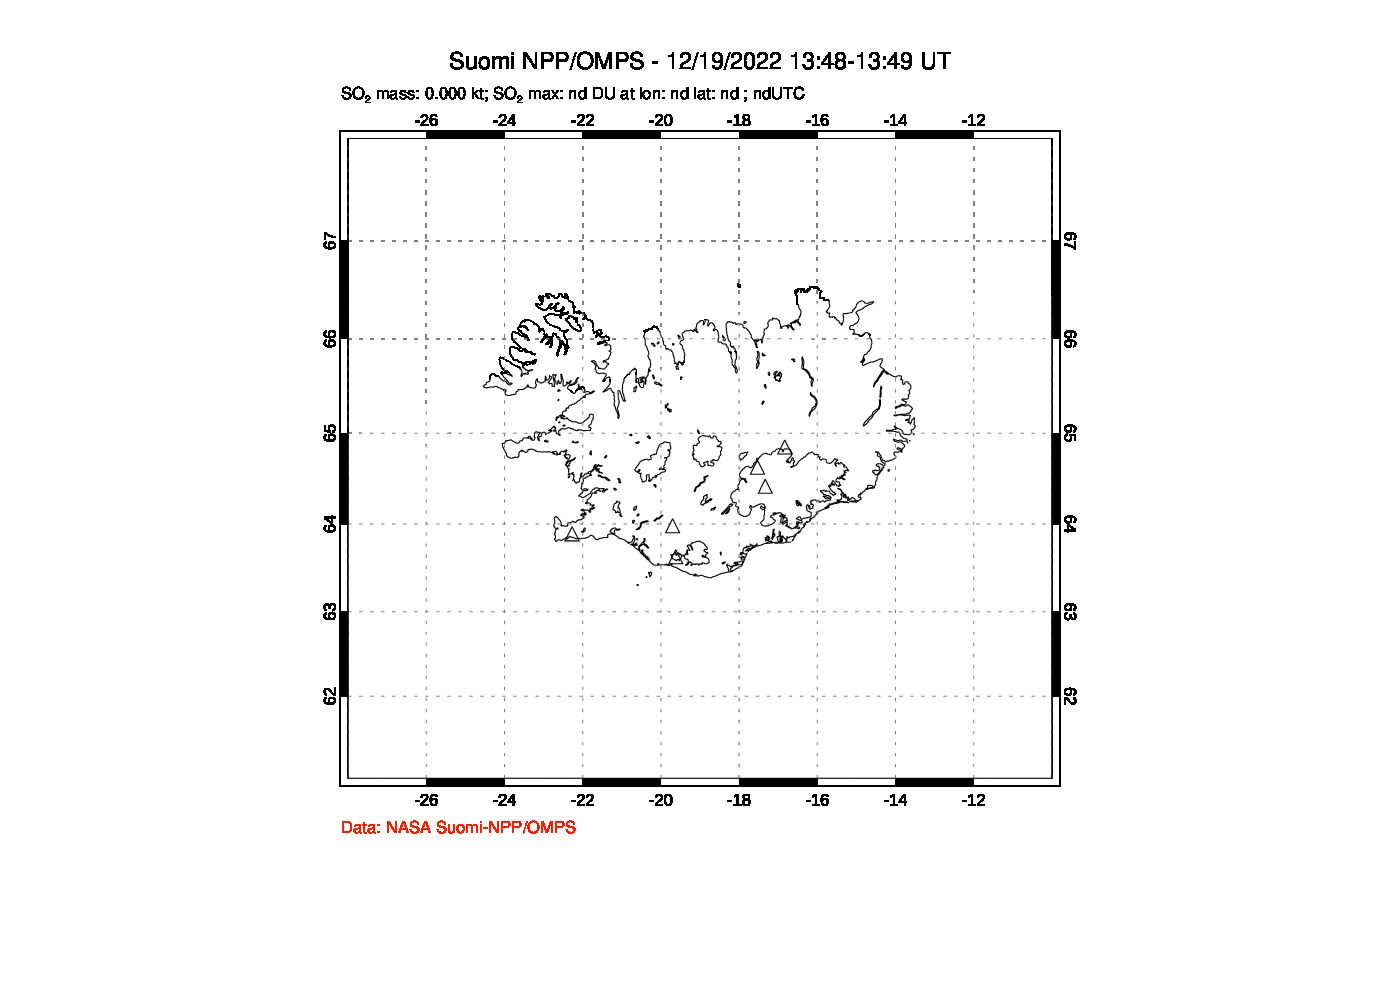 A sulfur dioxide image over Iceland on Dec 19, 2022.